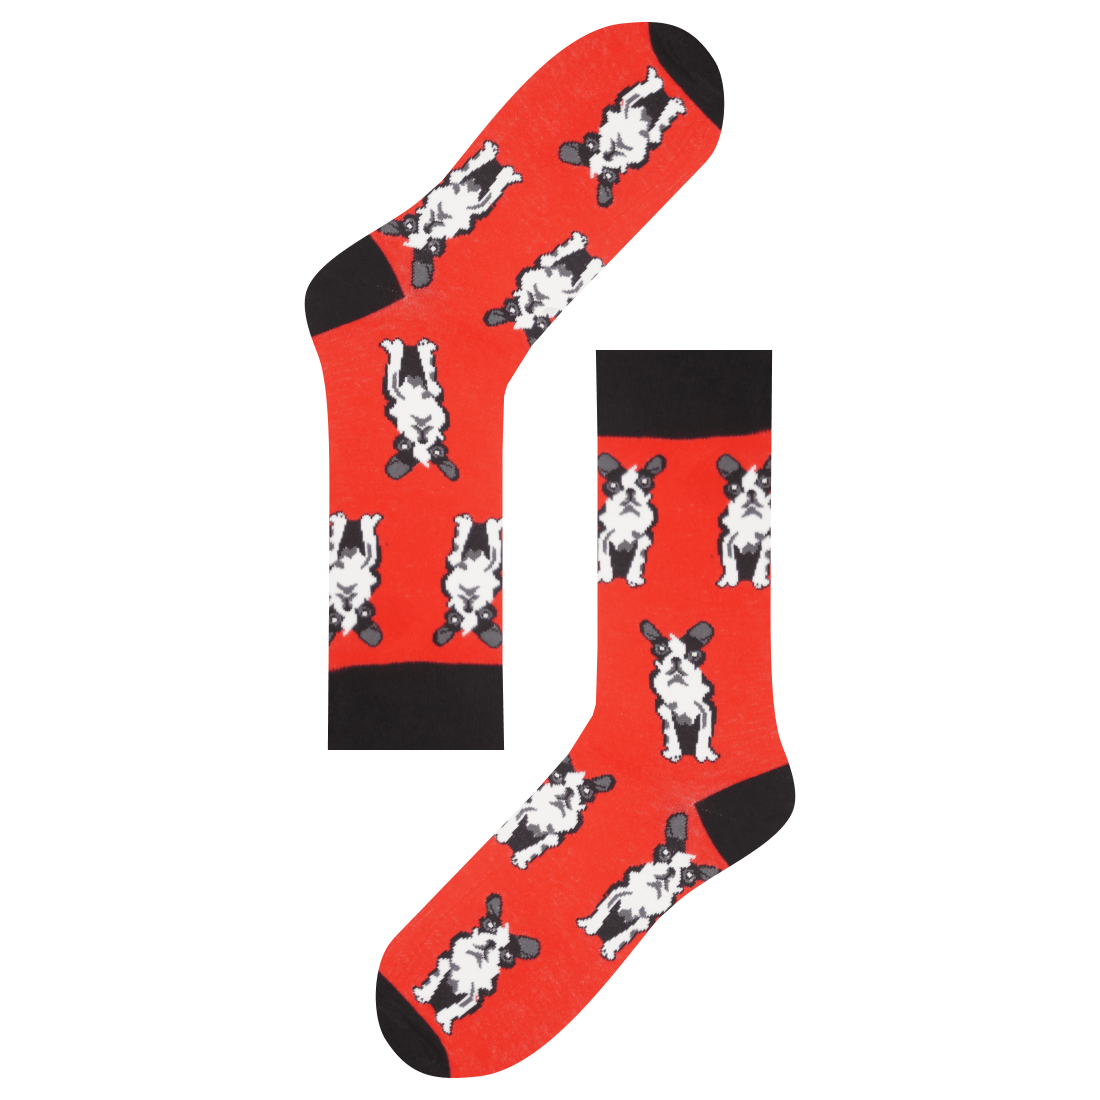 Medias Locas calcetines divertidos de diseño de perritos Freaky Socks